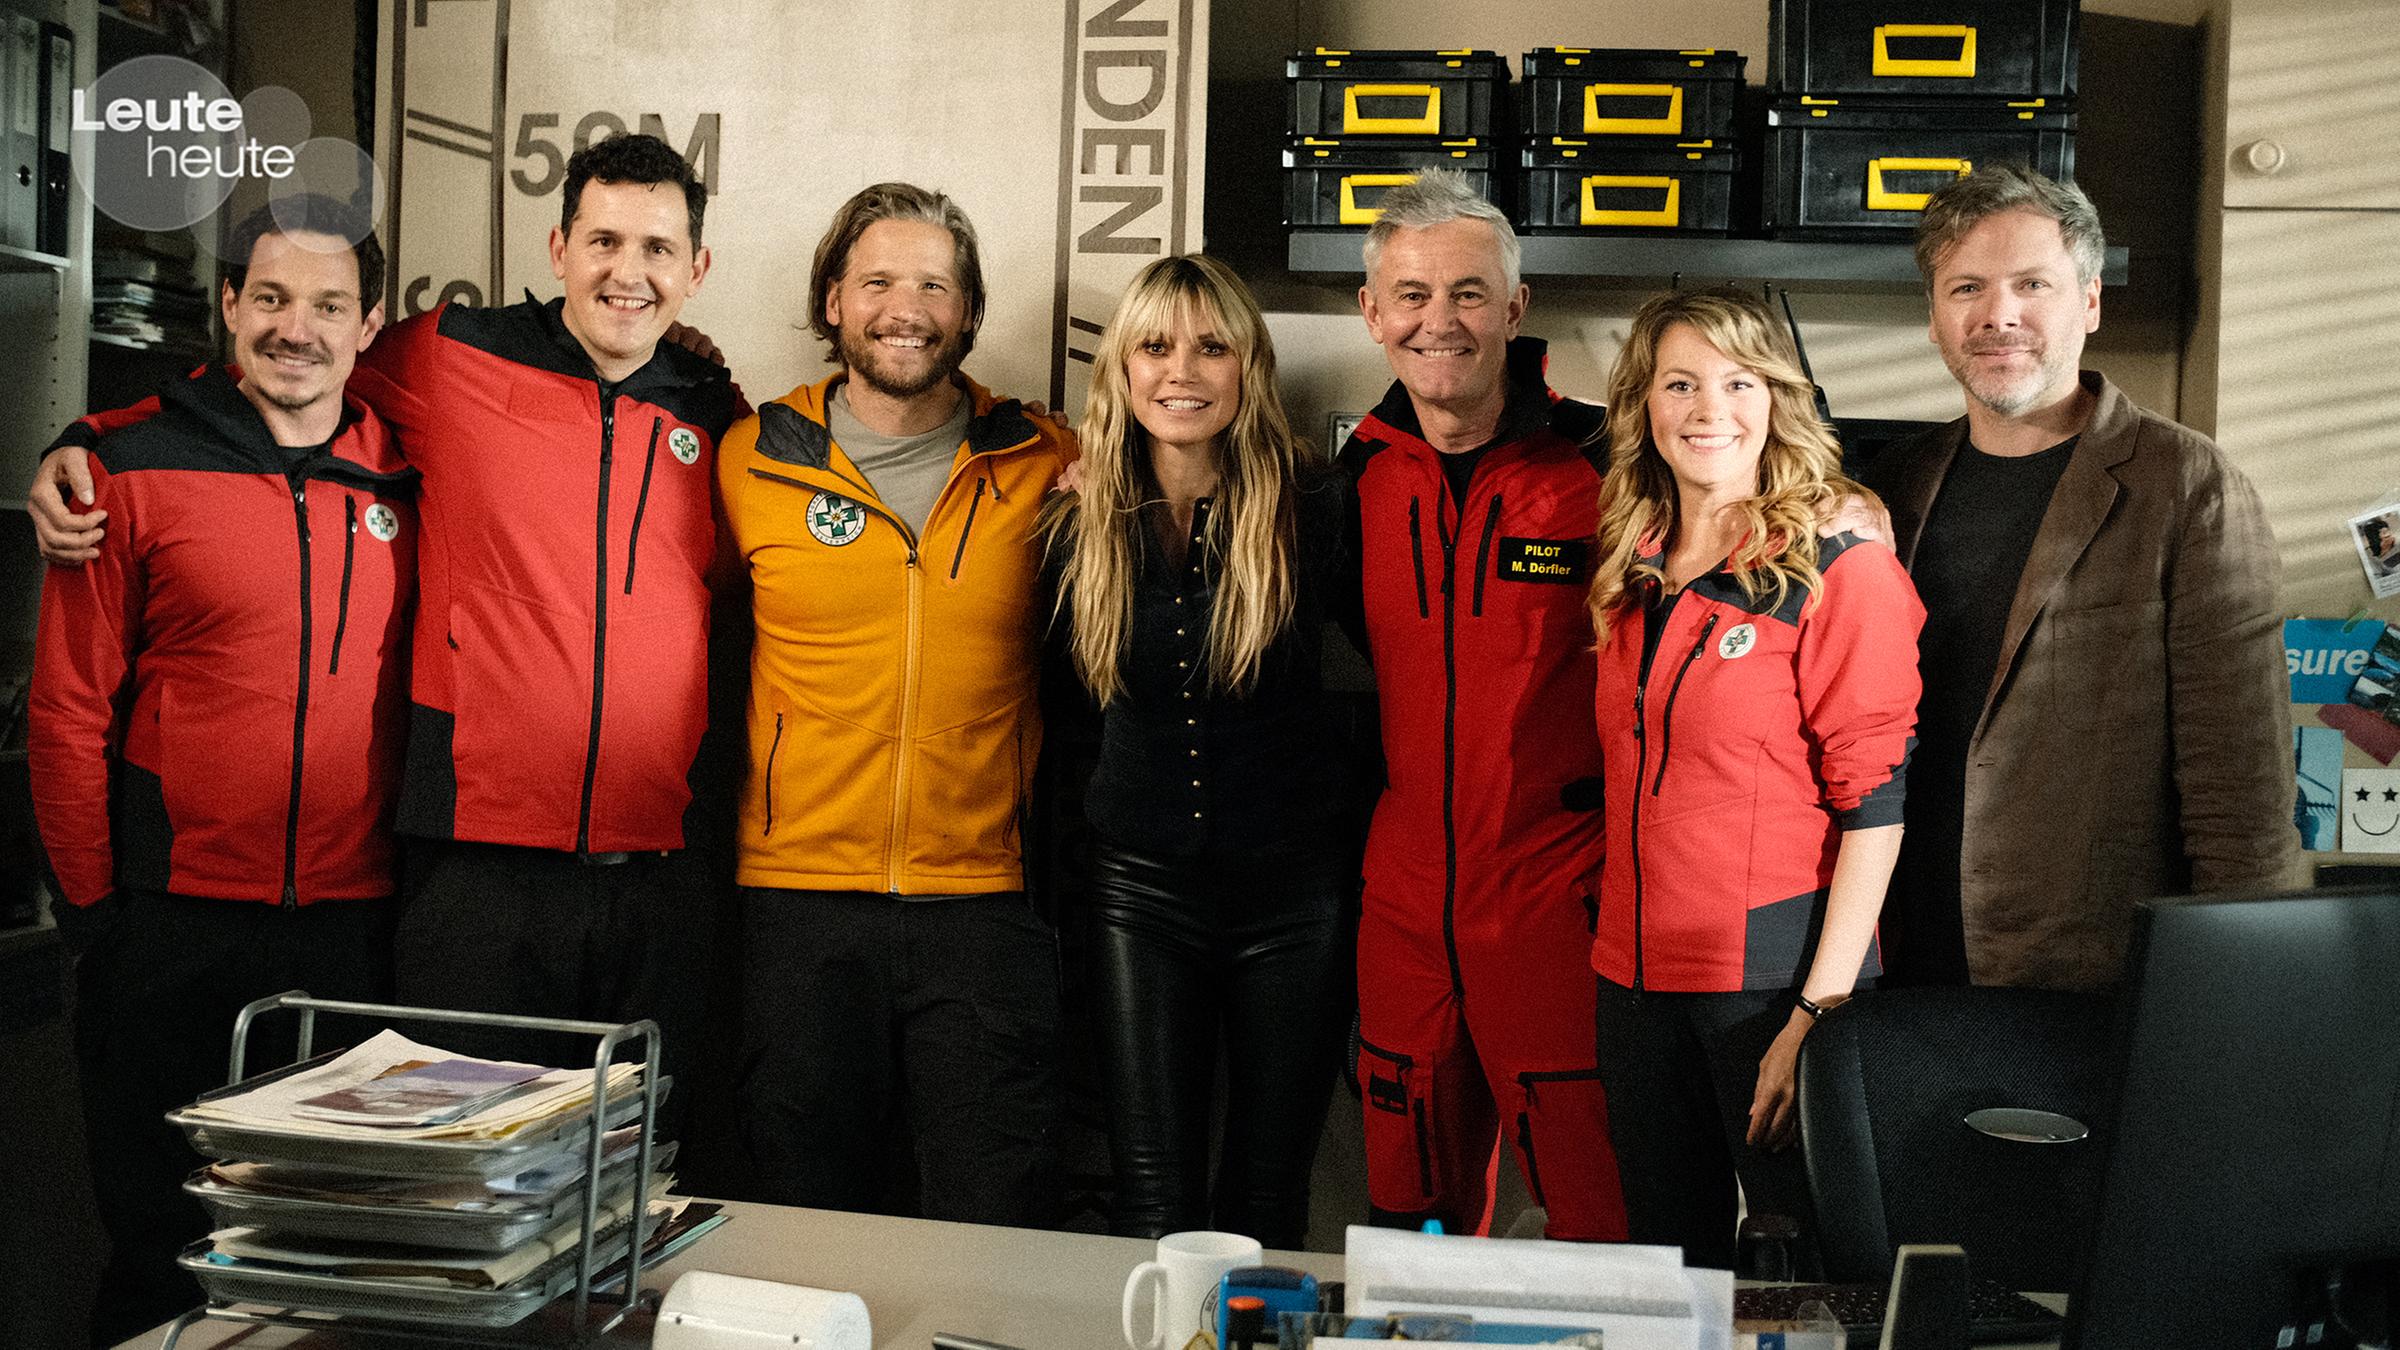 Heidi Klum spielt überraschend bei der 15. Staffel der Alpen-Serie mit. "Die Bergretter" hätten es ihr angetan und es sei ihr eine "Ehre2, sagte das Topmodel zur Bild". (19.5.2023)